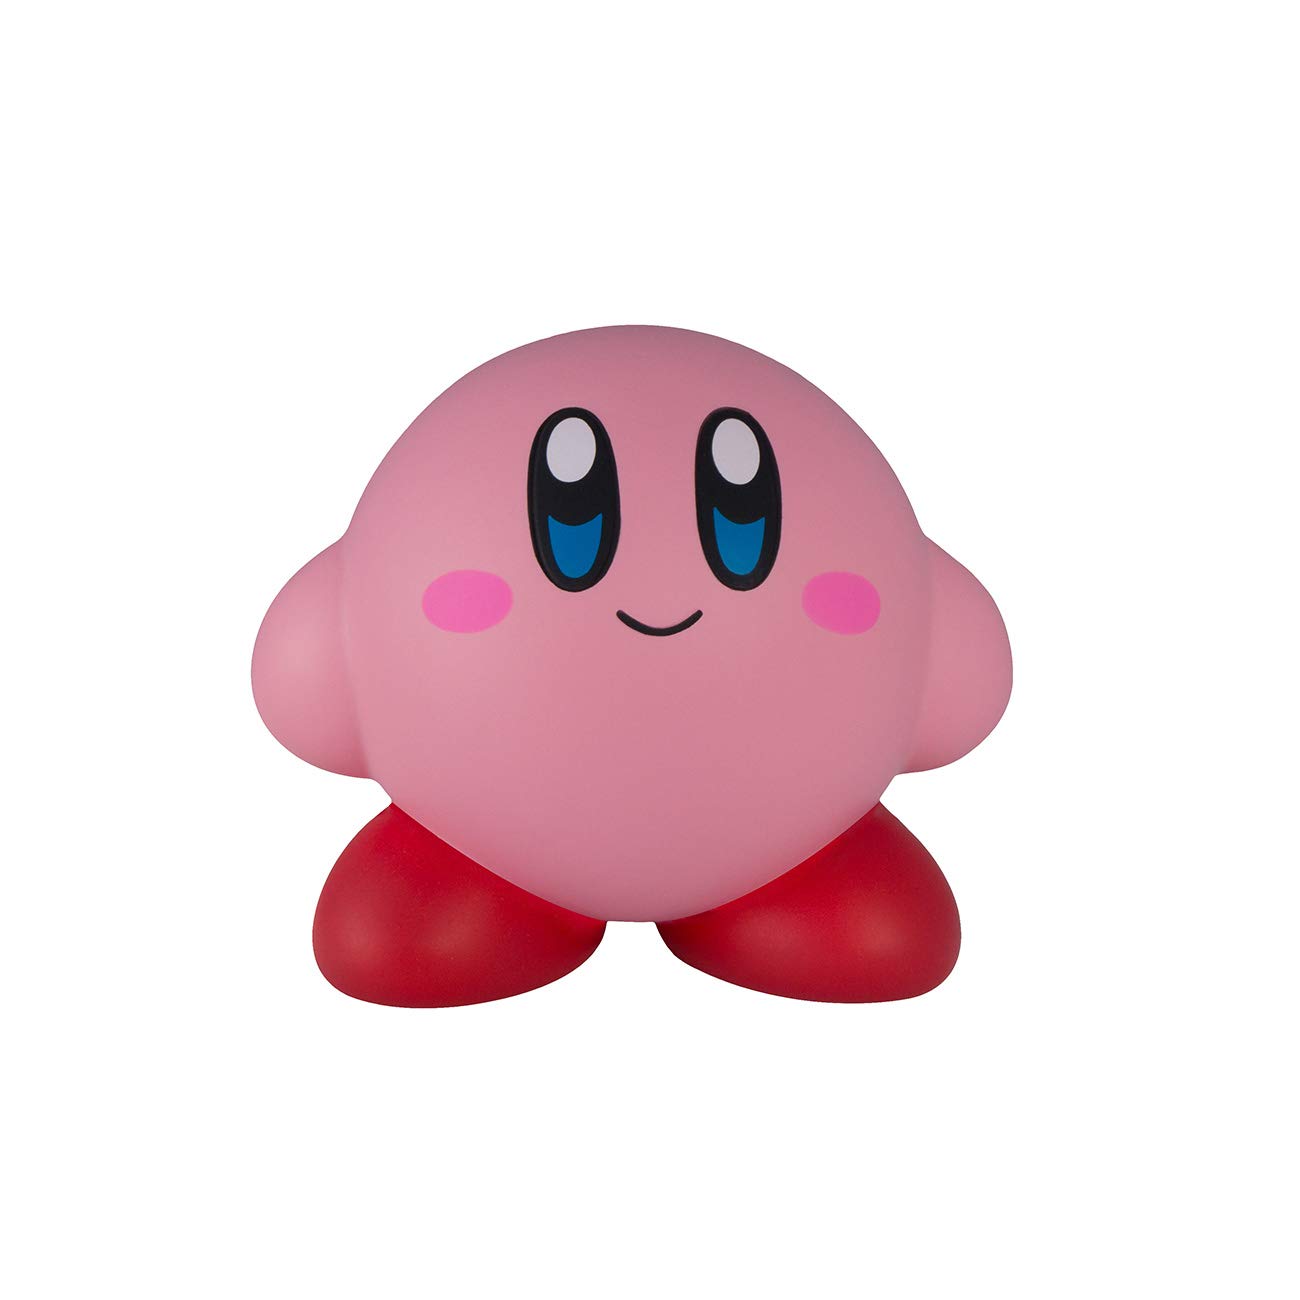 Mua Kirby Mega SquishMe trên Amazon Mỹ chính hãng 2023 | Giaonhan247